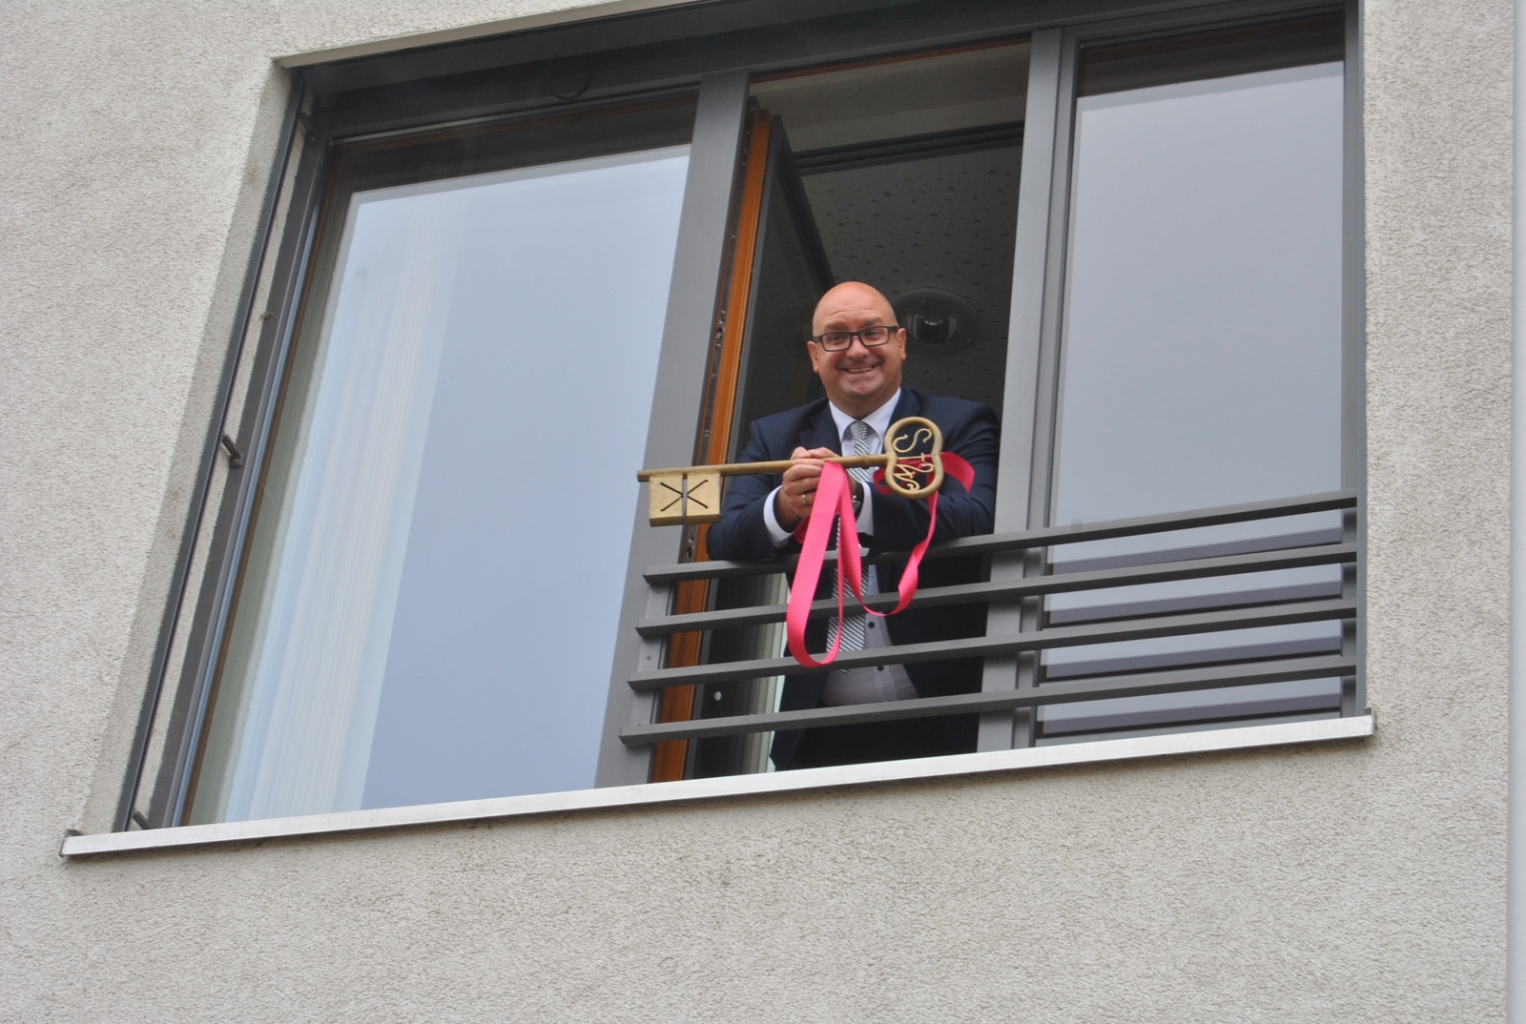 Bürgermeister Jens Geiß mit dem Rathausschlüssel am Fenster des Trauzimmers. Foto: Gemeinde